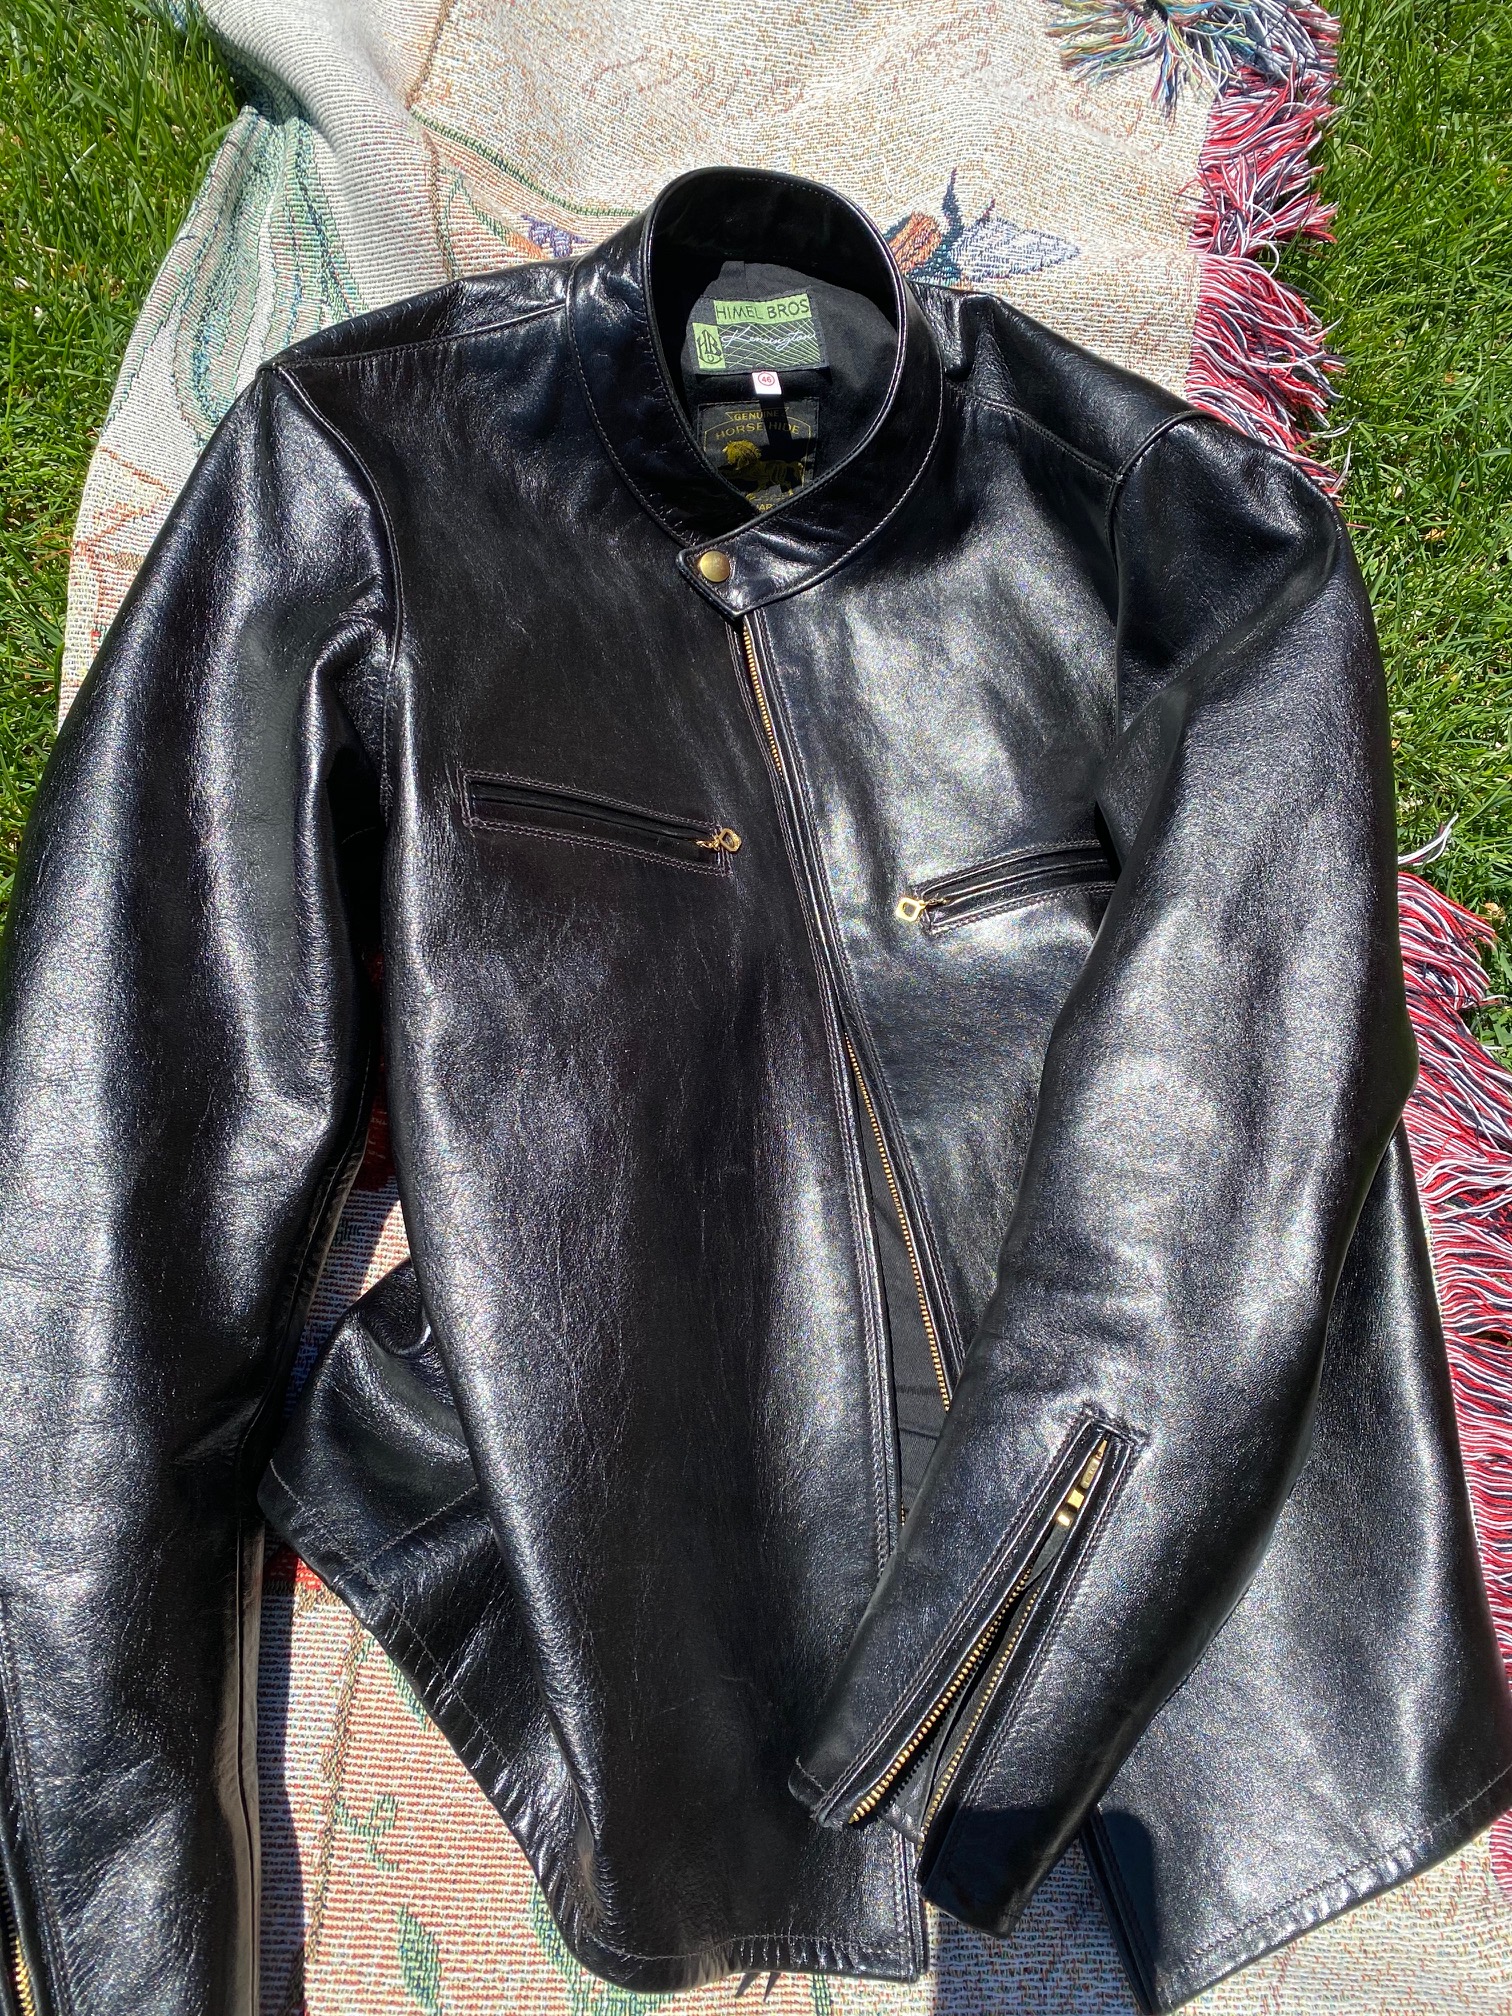 Himel Kensington SHINKI leather cafe racer jacket size 44 | The Fedora ...